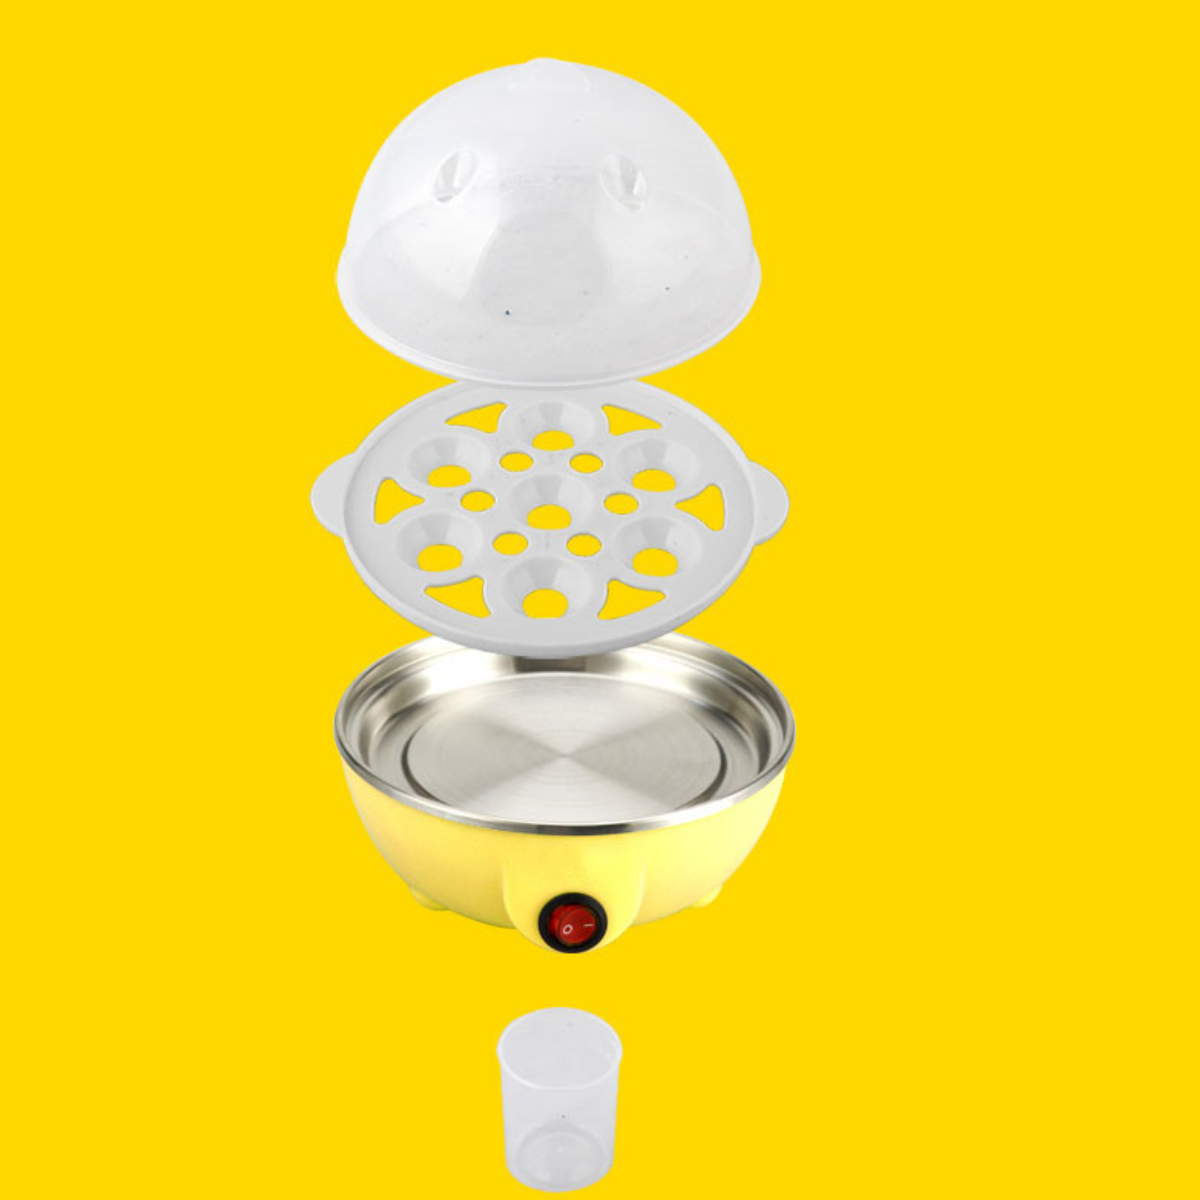 Mini-Multifunktions-Eierkocher automatischer UWOT Hausgebrauch mit für Abschaltung den Dampfgarer